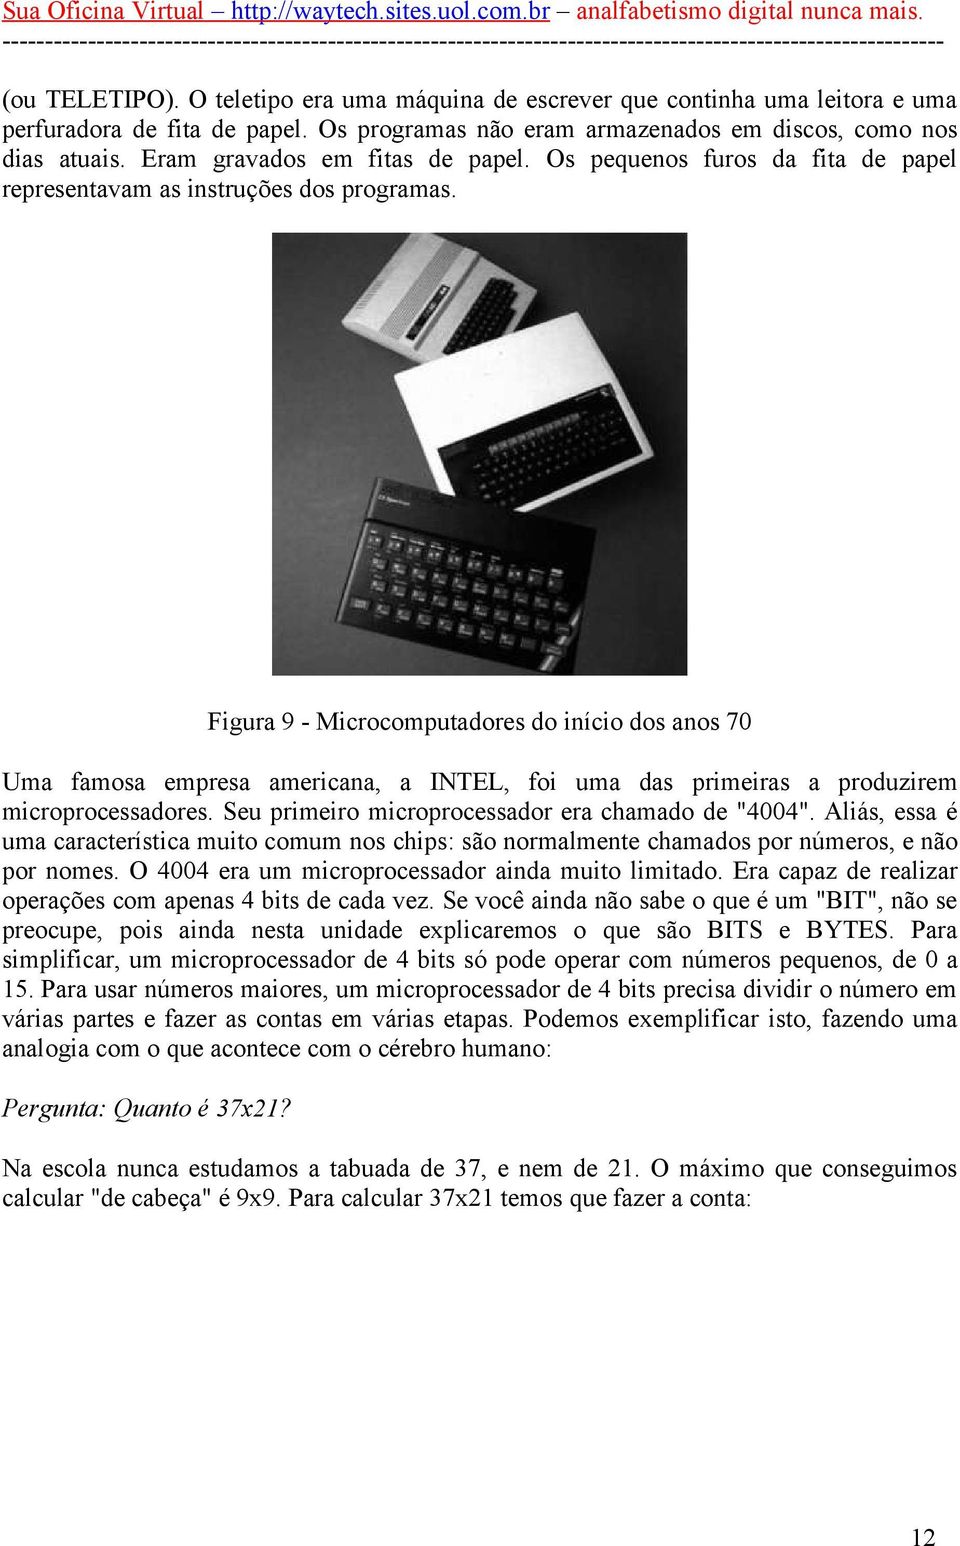 Figura 9 - Microcomputadores do início dos anos 70 Uma famosa empresa americana, a INTEL, foi uma das primeiras a produzirem microprocessadores. Seu primeiro microprocessador era chamado de "4004".